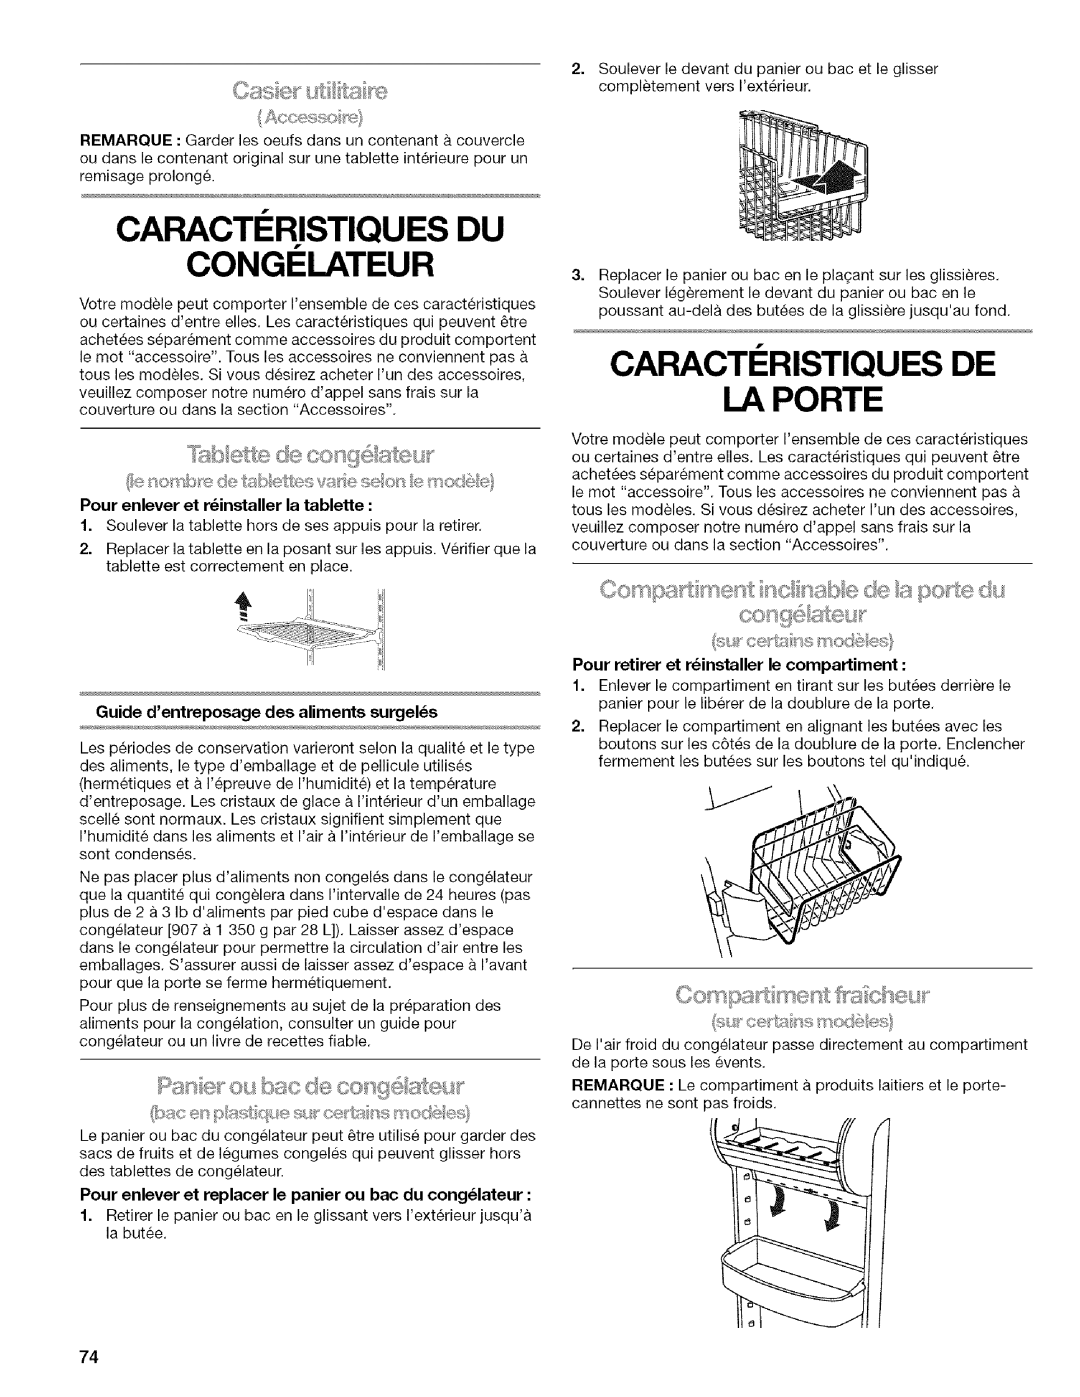 Kenmore 2318589 manual Caracteristiques Du, Congelateur, Caracti Ristiques De I_Aporte, Pan@ou bac de coo i !i, ut 